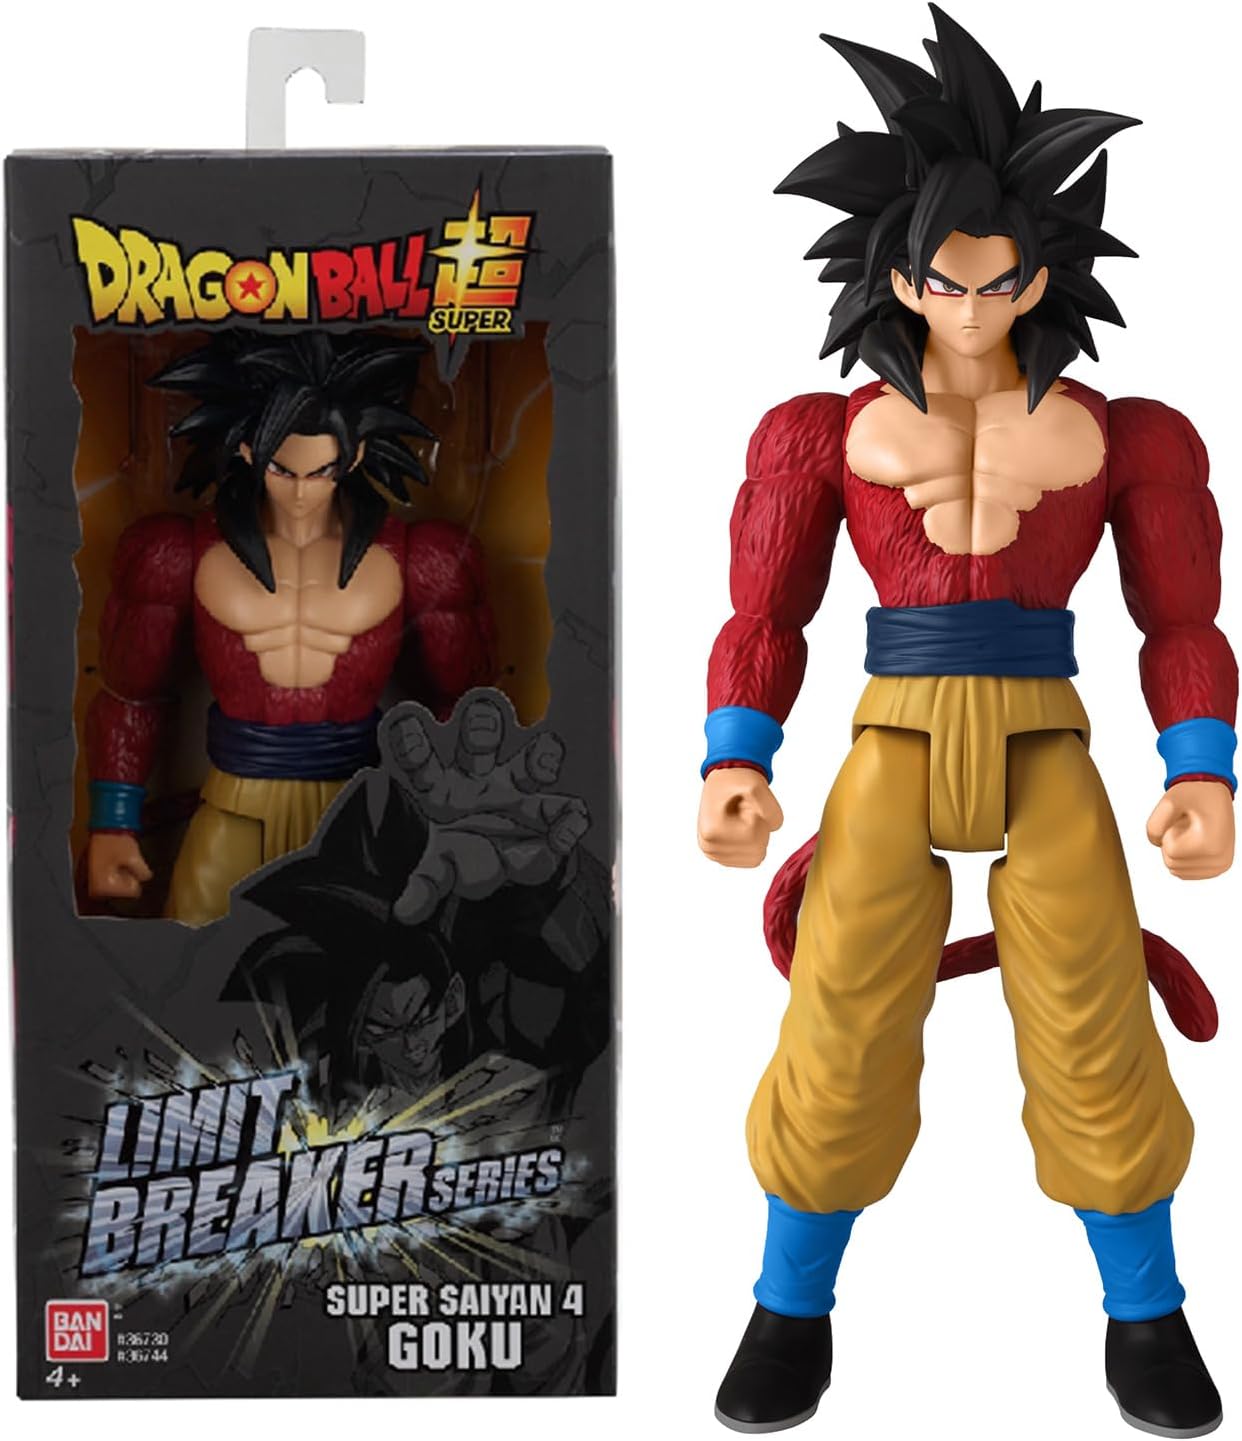 12 Limit Breaker Series Super Saiyan 4 Goku